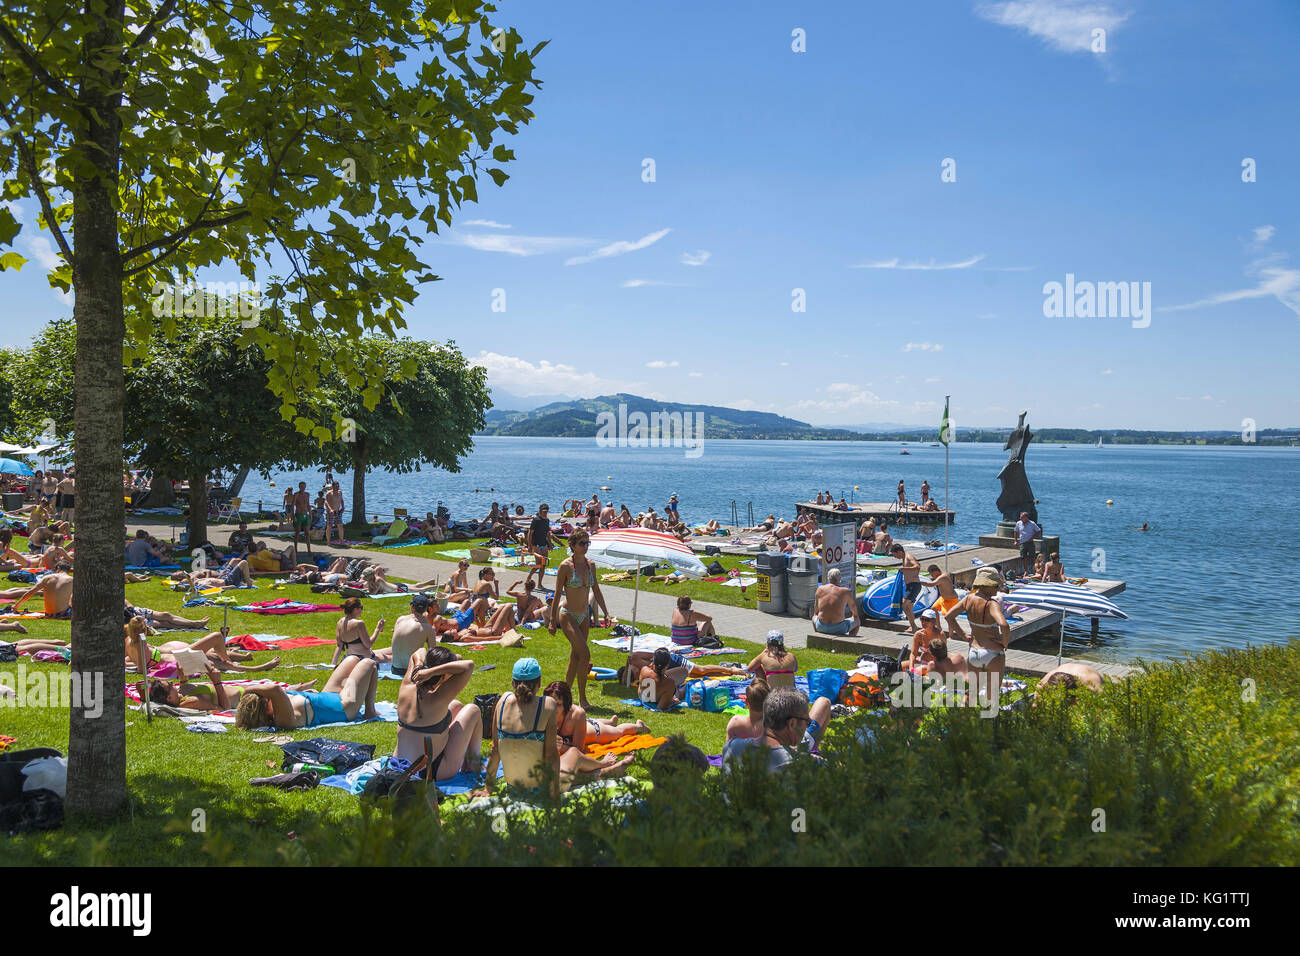 Zug, Kanton Zug, Schweiz : Schwimmbad am Zuger ver Foto de stock